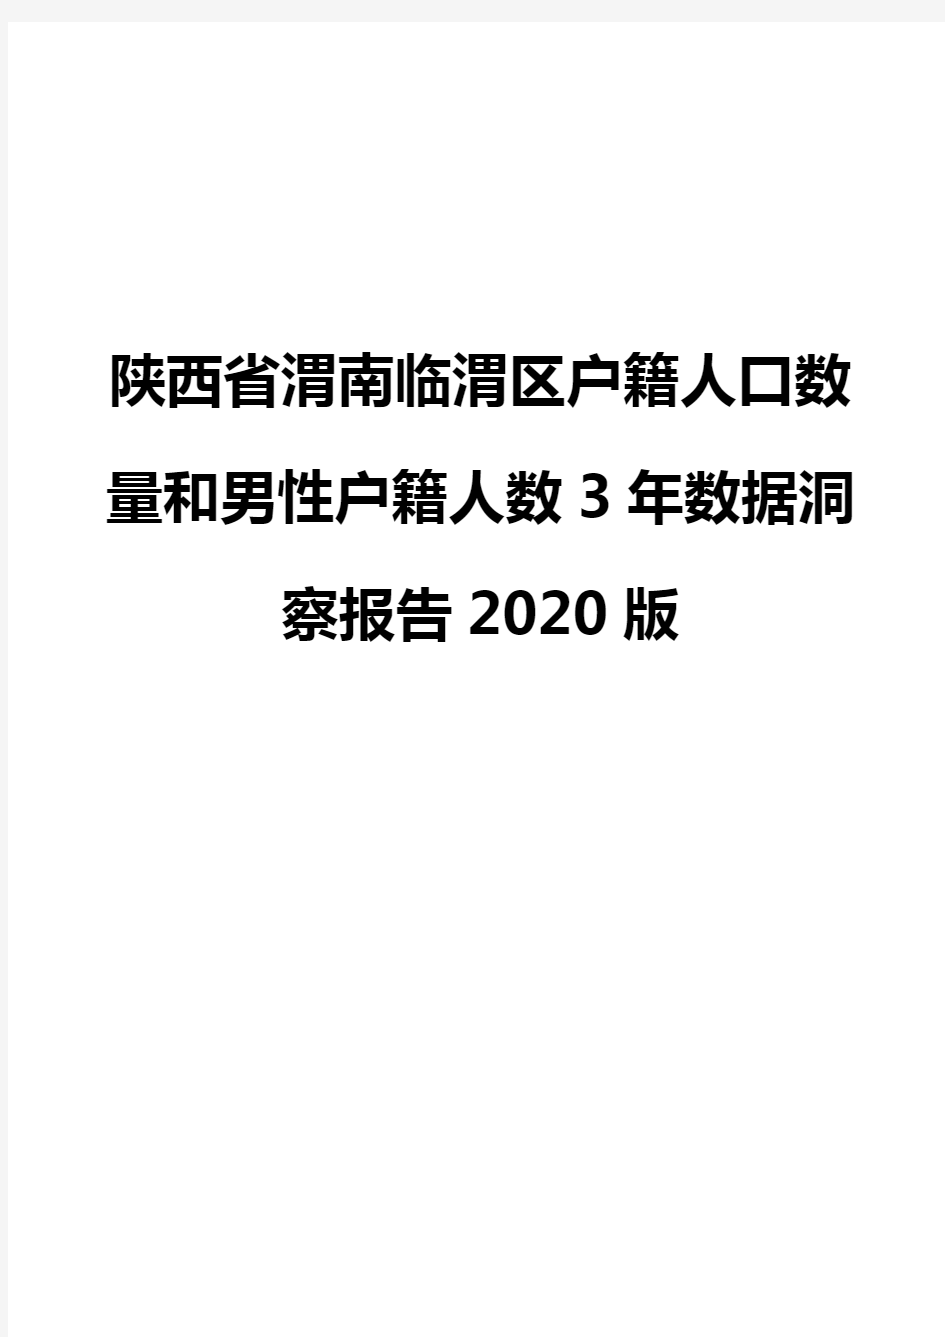 陕西省渭南临渭区户籍人口数量和男性户籍人数3年数据洞察报告2020版